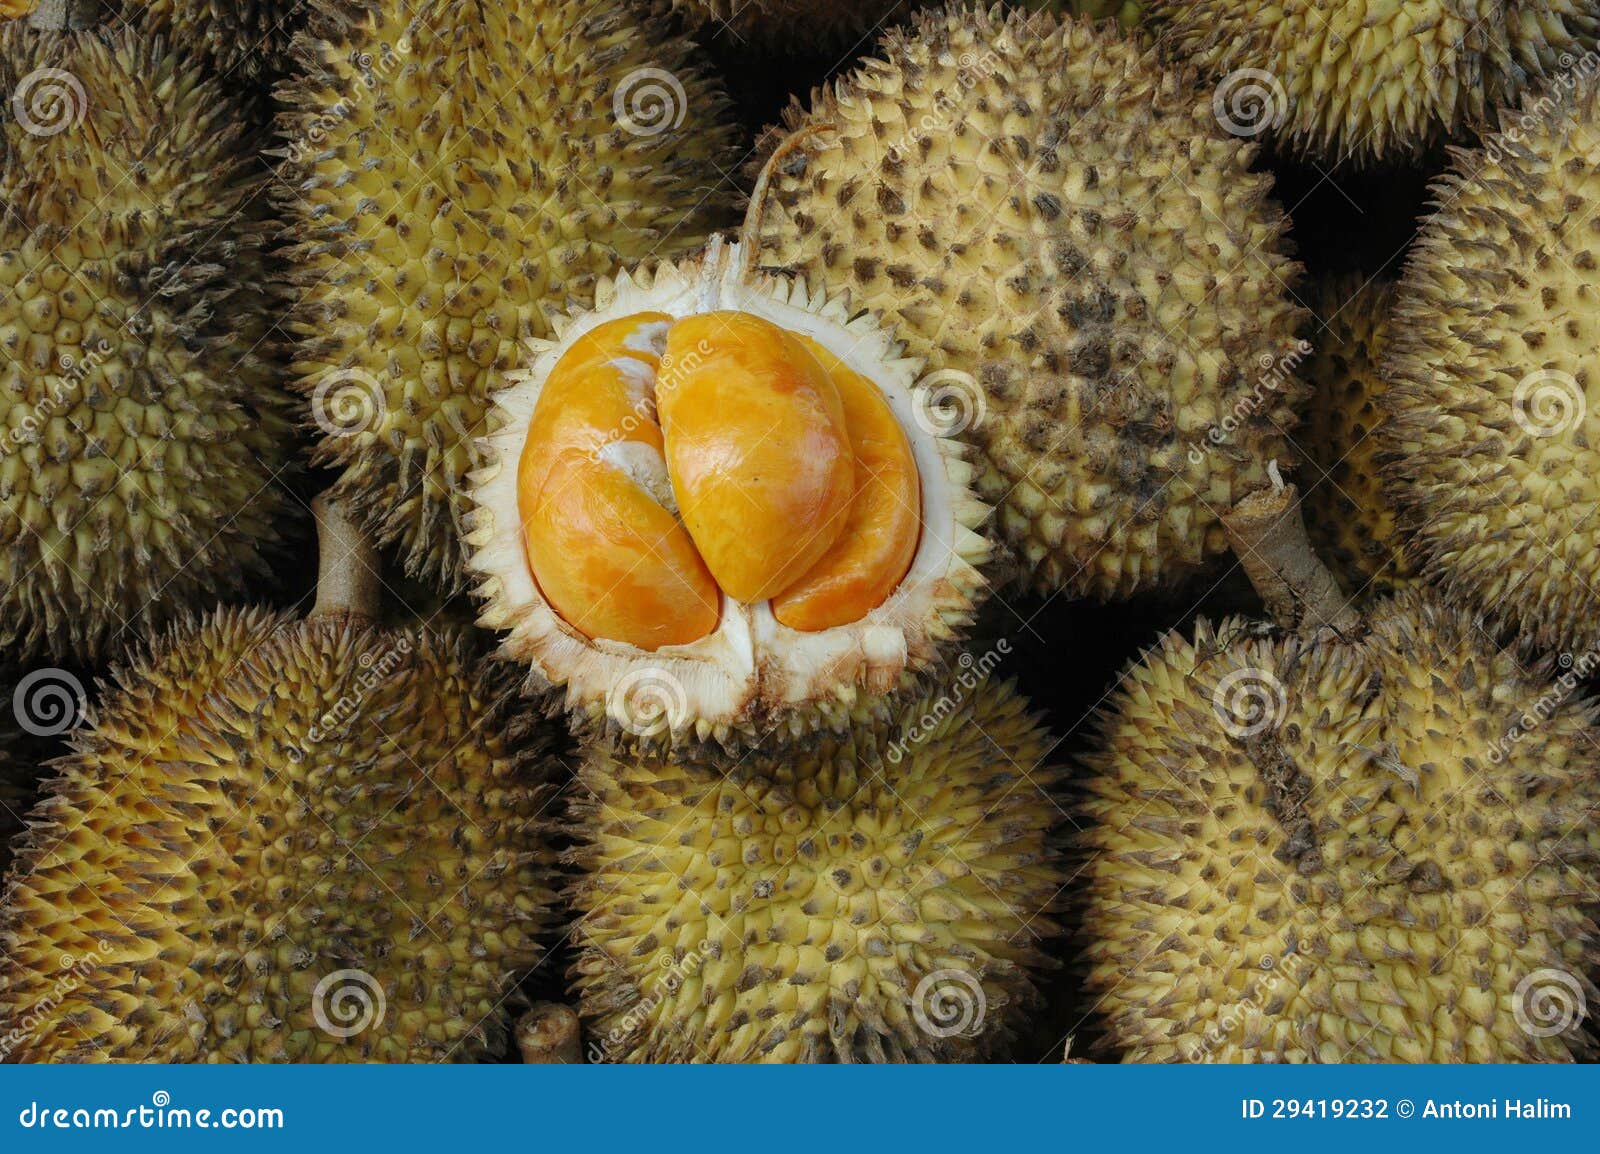 印度尼西亚等热带国家的典型水果拉姆布坦 库存图片. 图片 包括有 鸡尾酒, 背包, 庭院, 食物, 敌意 - 240738453